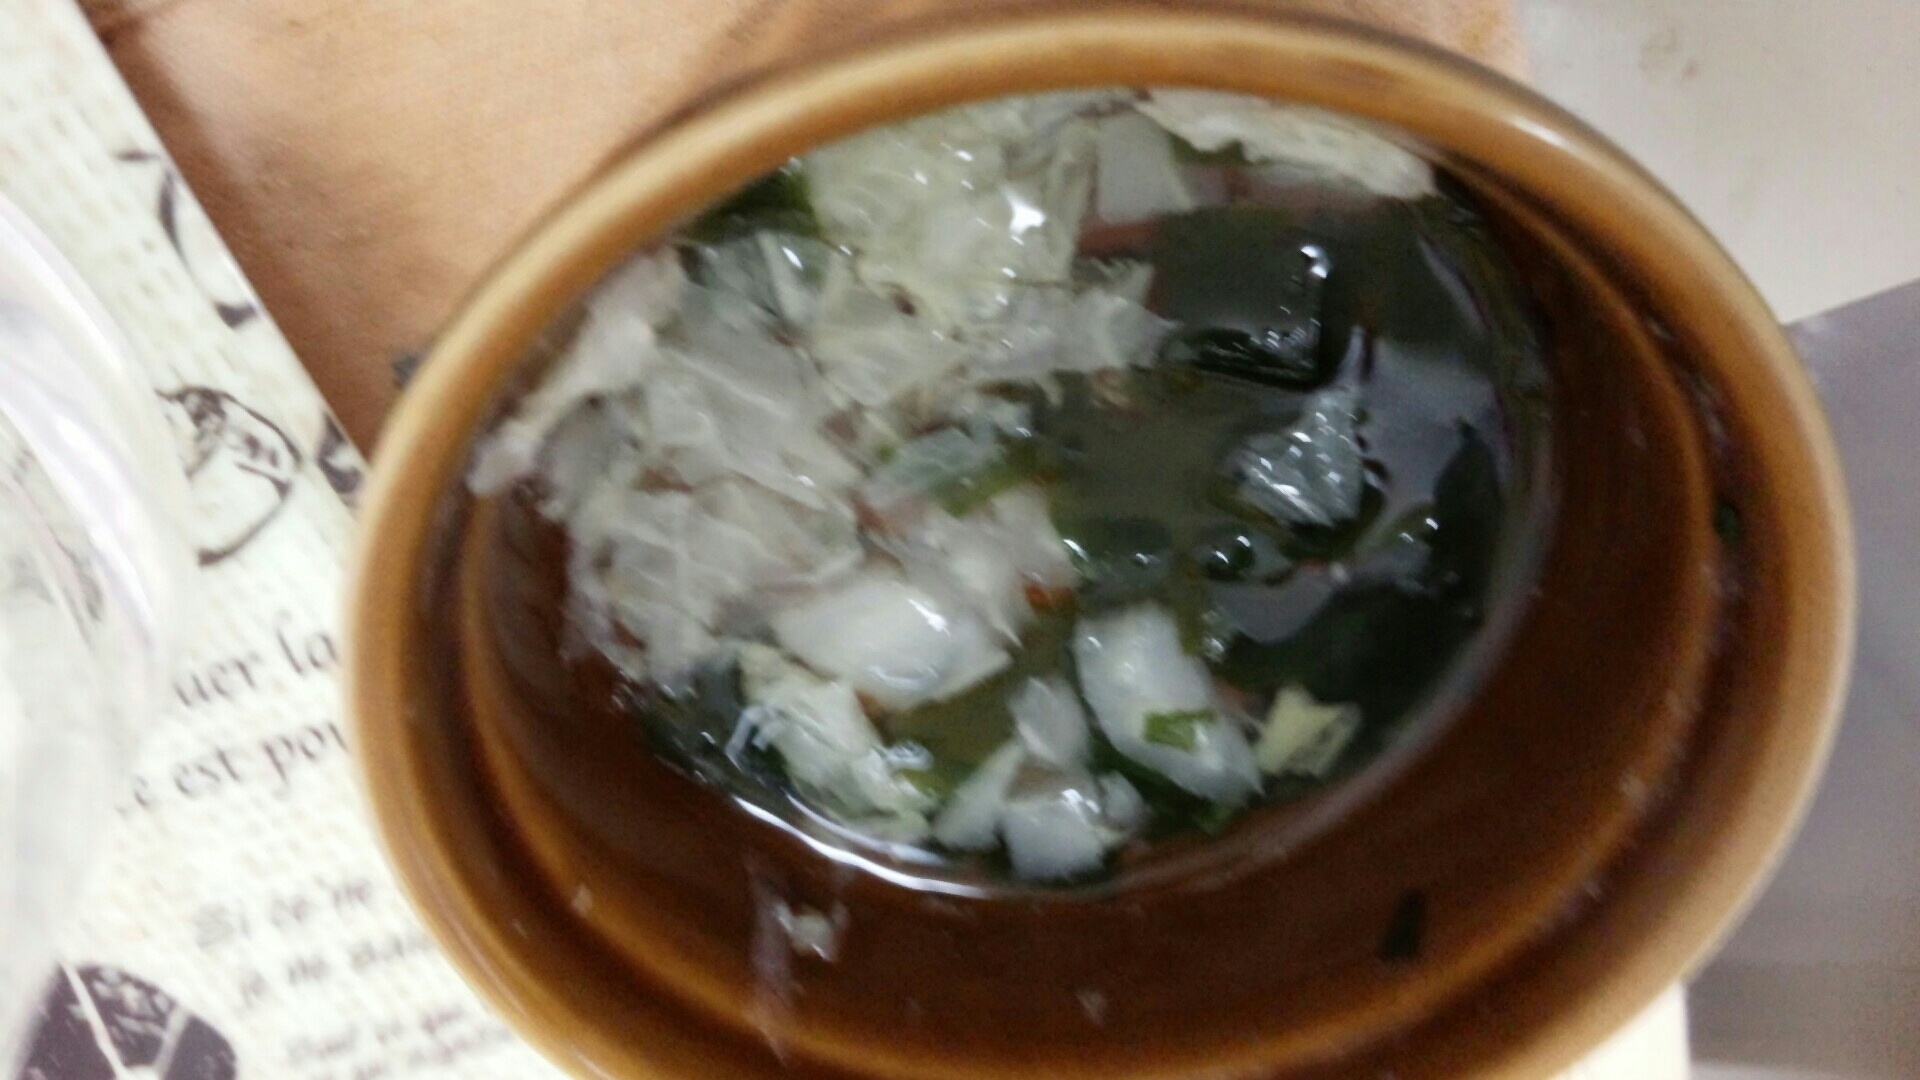 【離乳食後期】白菜とわかめのスープ